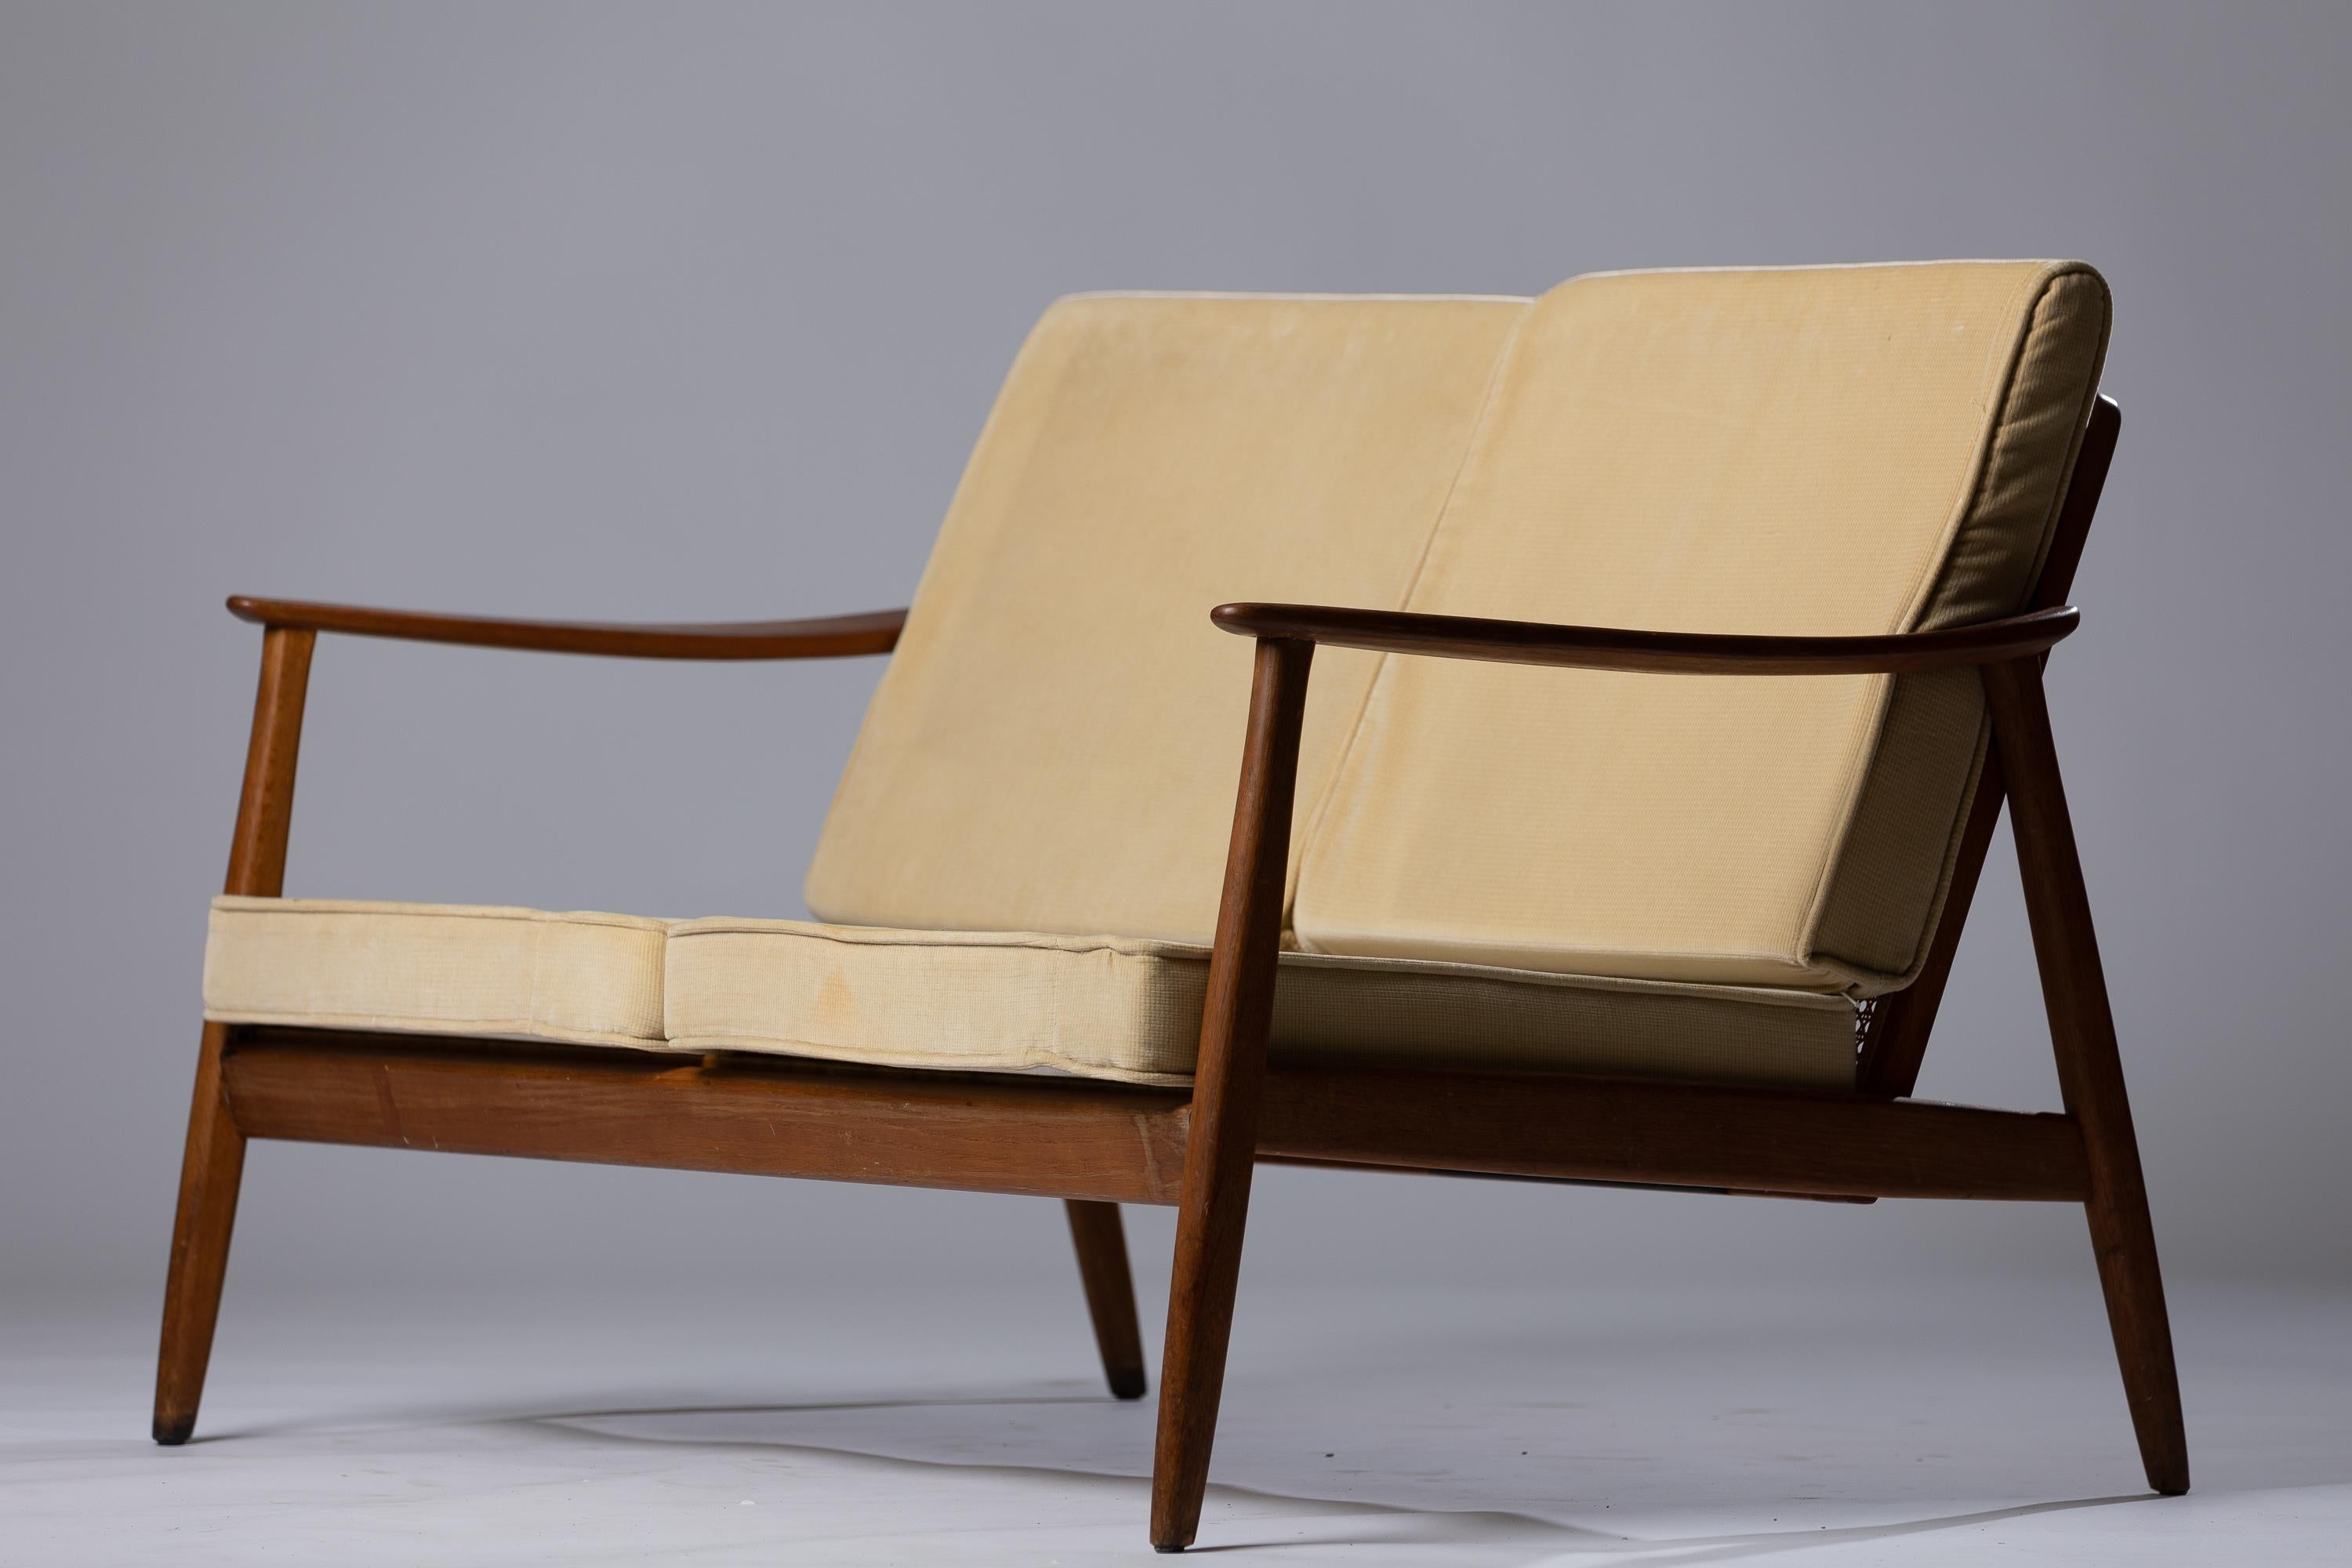 Peppen Sie Ihre Einrichtung mit dem exquisiten Scandinavian Modern Sofa auf, das Folke Ohlsson für Dux entworfen hat. Dieses ikonische Stück aus Rattan und Teakholz verkörpert perfekt die Essenz des Designs der Jahrhundertmitte und verbindet Form